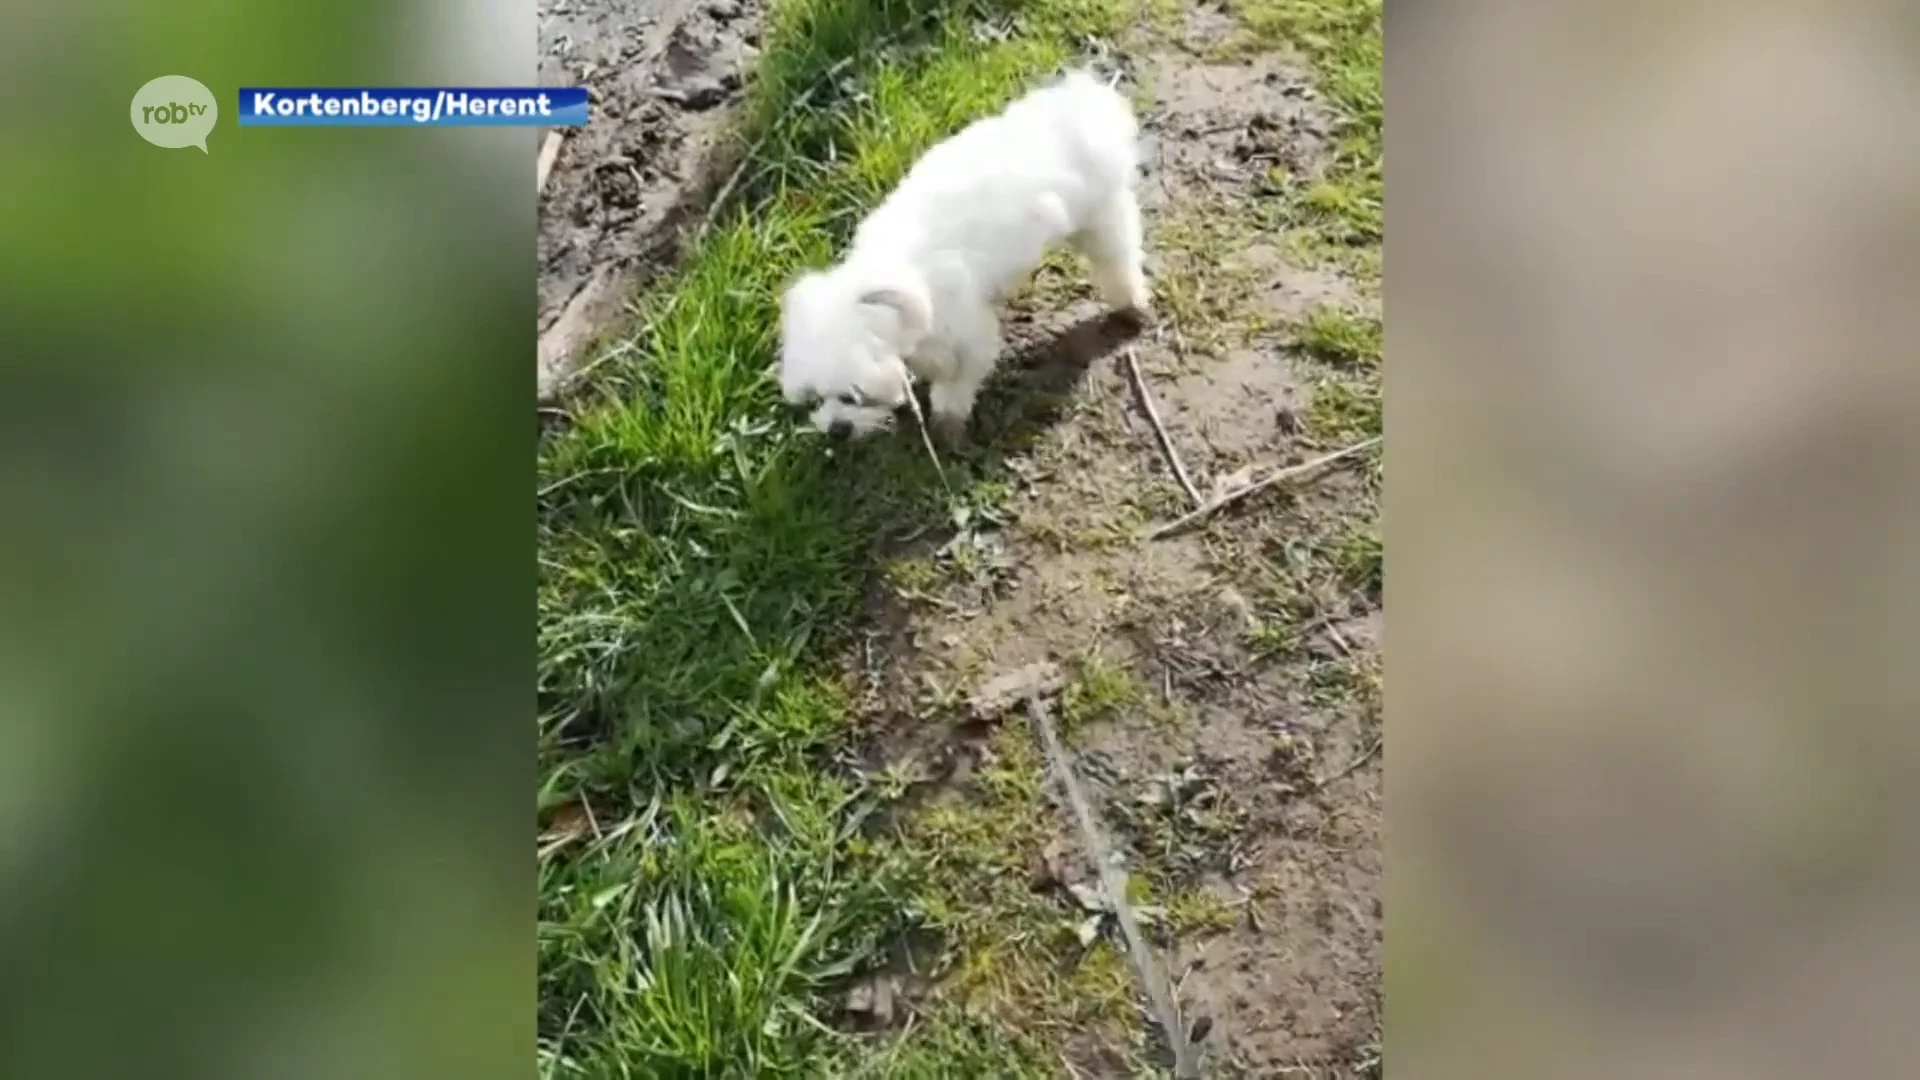 Minstens twee honden vergiftigd in Herent en Kortenberg, één dier overleden: "Hoop dat je het niet moet meemaken"